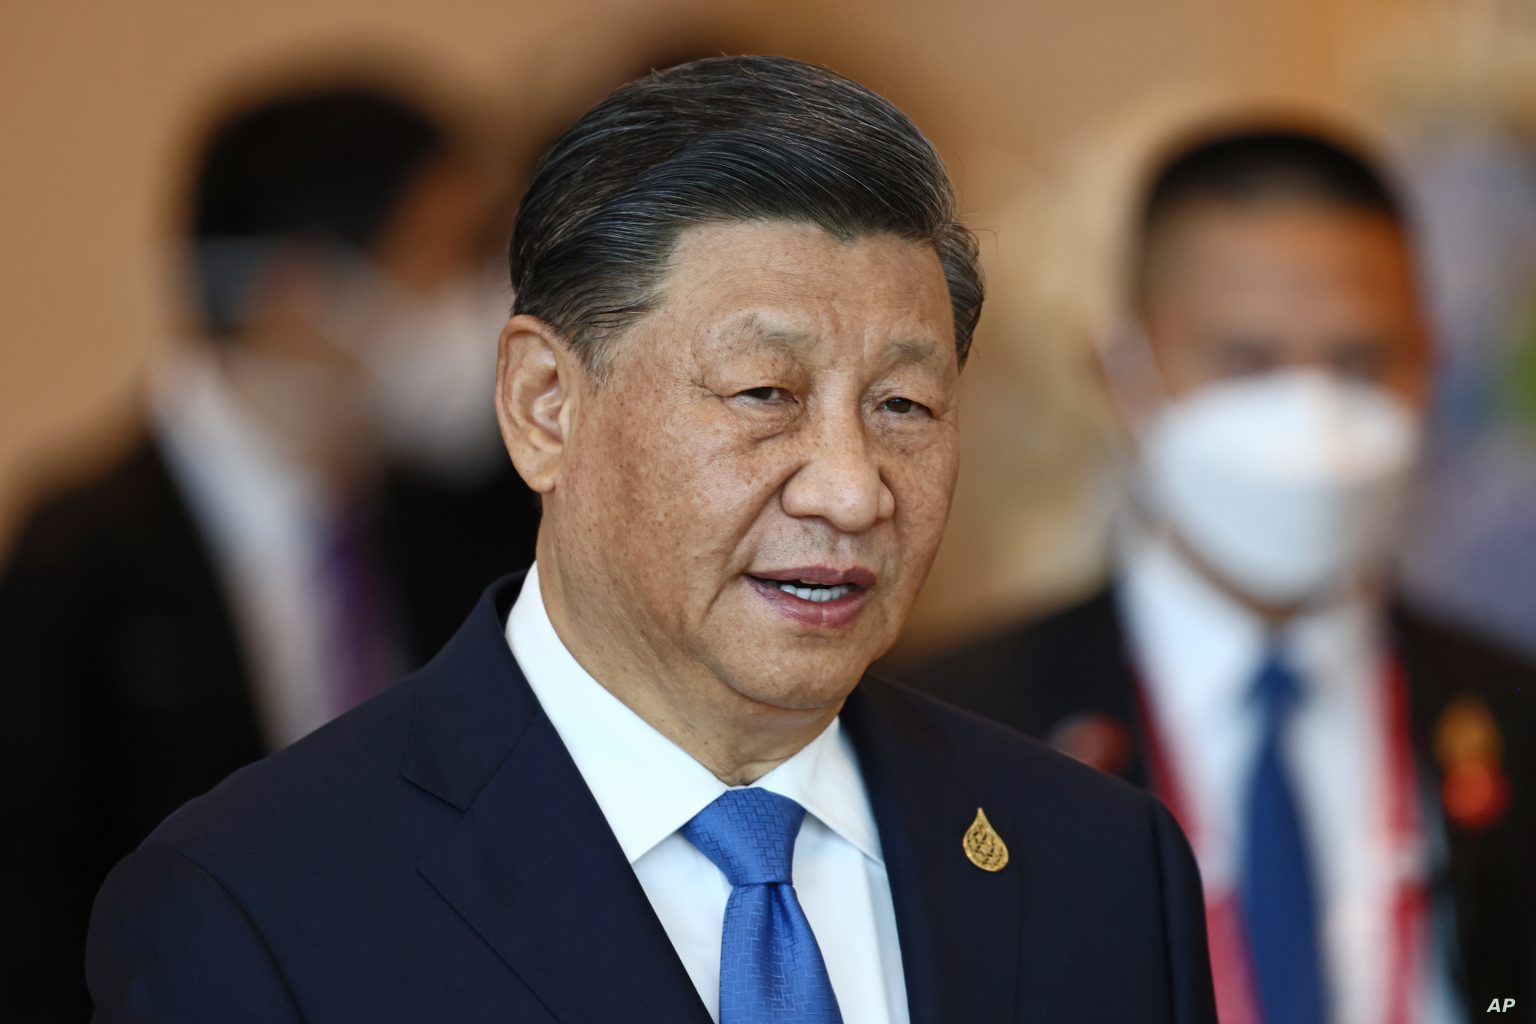 الاستخبارات الأميركية: رئيس الصين أمر جيشه بالتأهب لغزو تايوان في 2027